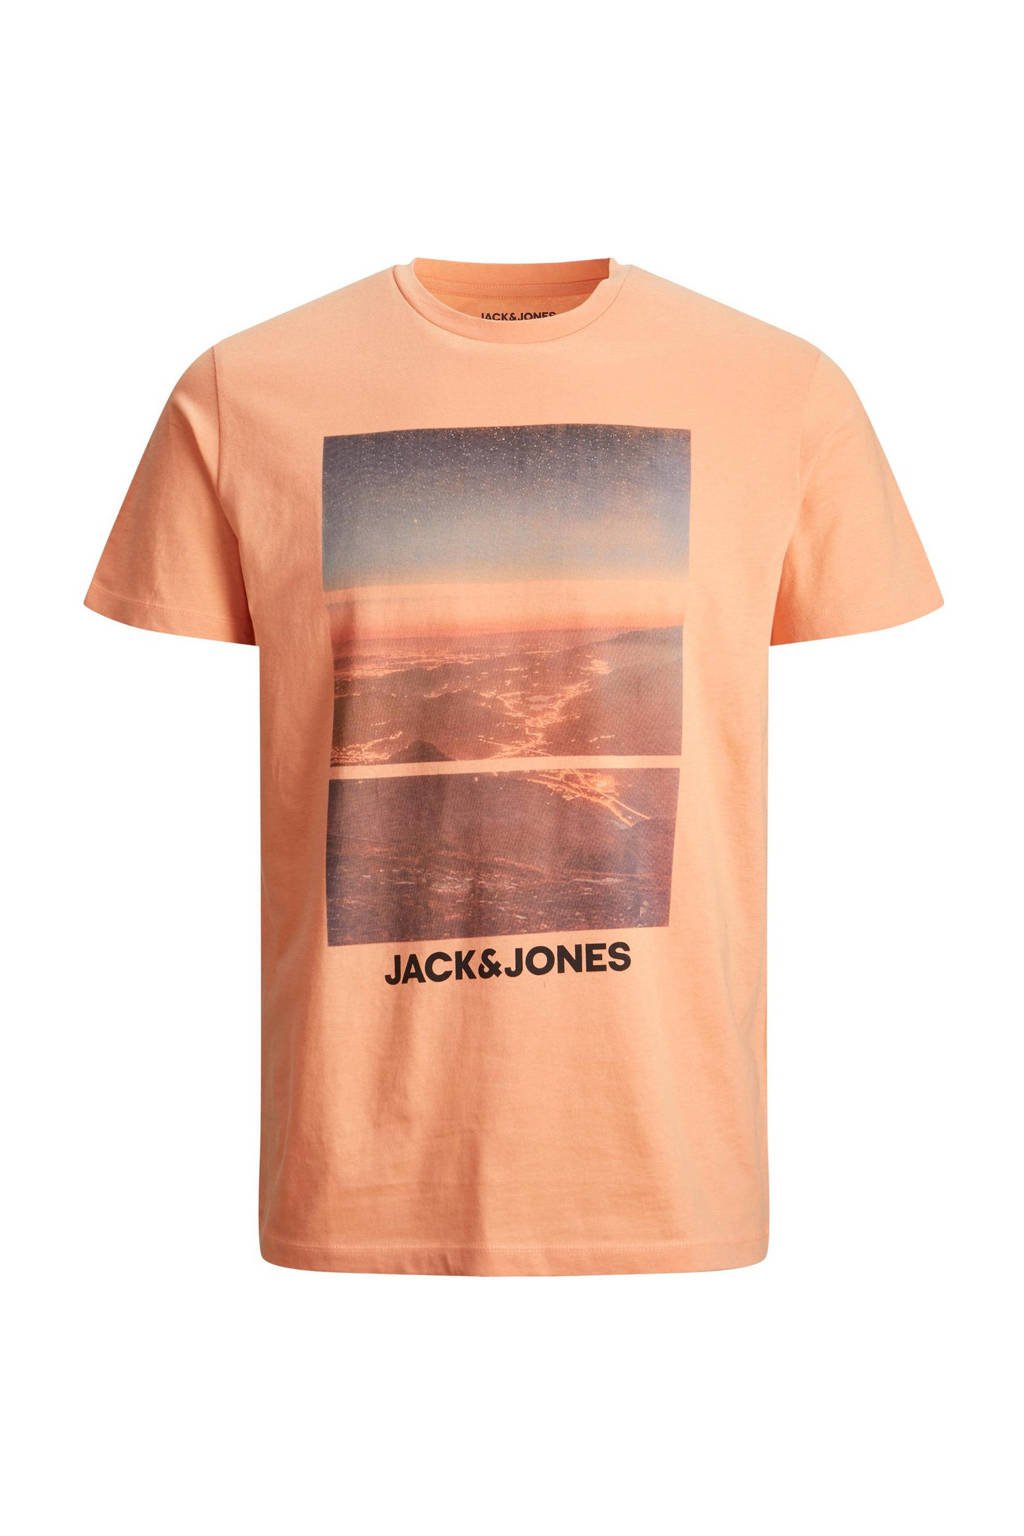 Oranje heren JACK & JONES PLUS SIZE T-shirt Plus Size van katoen met printopdruk, korte mouwen en ronde hals